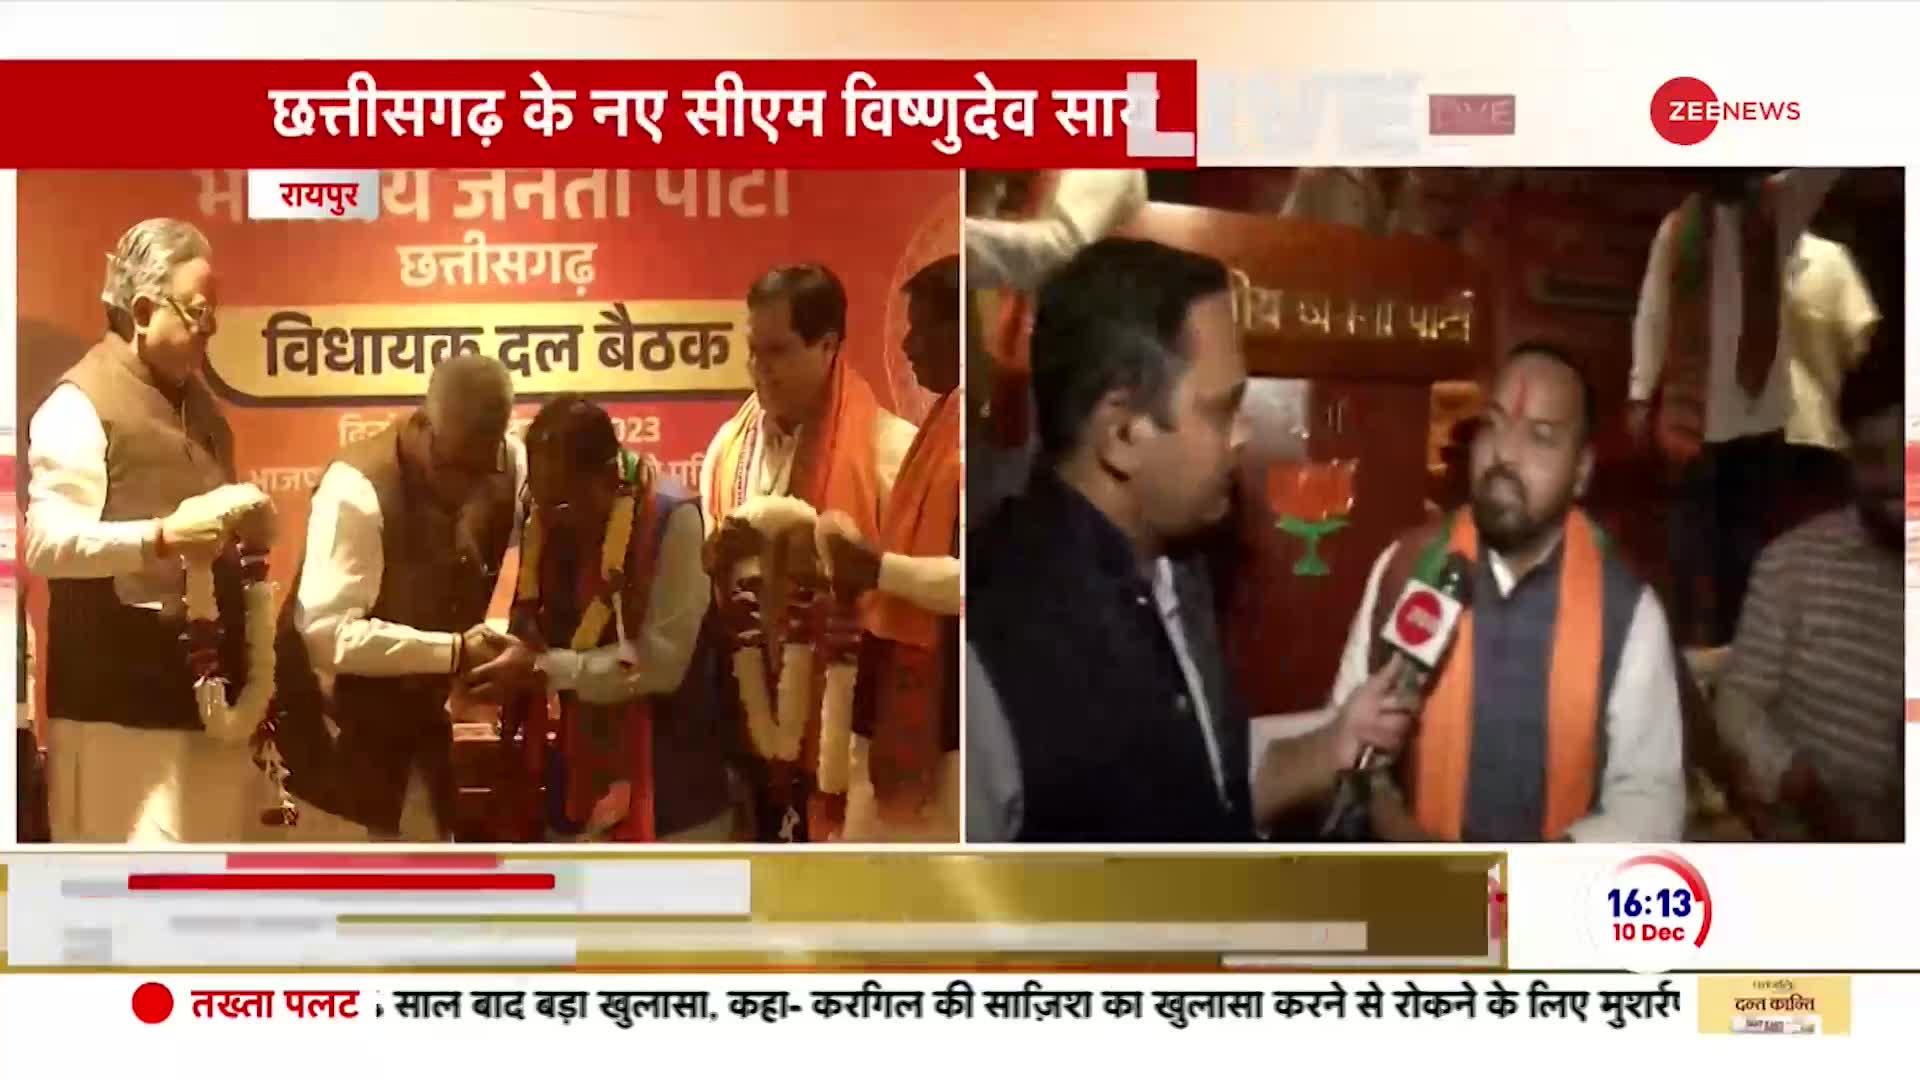 विष्णुदेव साय बने छत्तीसगढ़ के नए मुख्यमंत्री | Chhattisgarh New CM | BJP